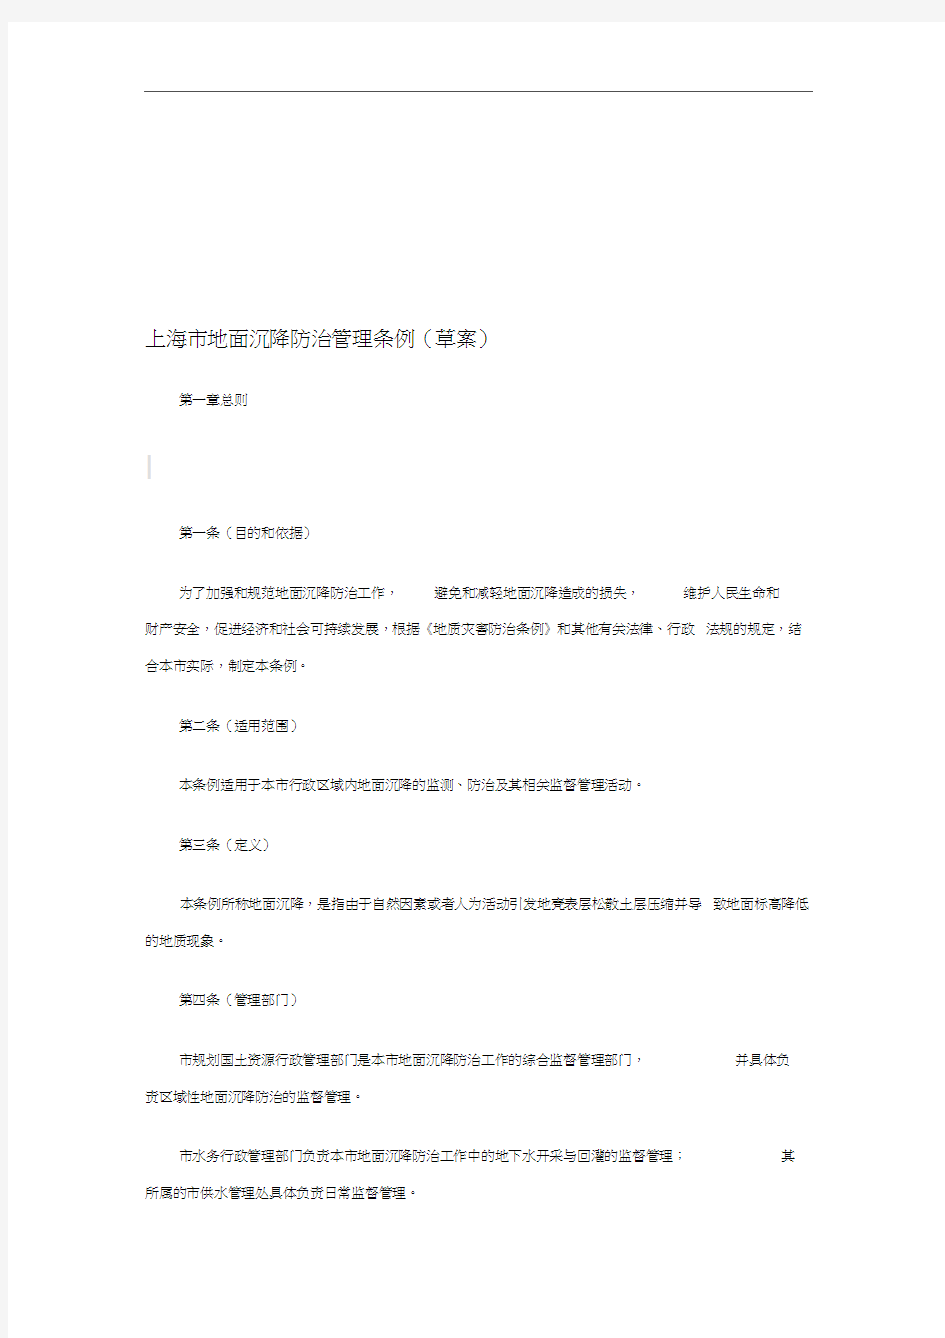 上海市地面沉降防治管理条例(草案)